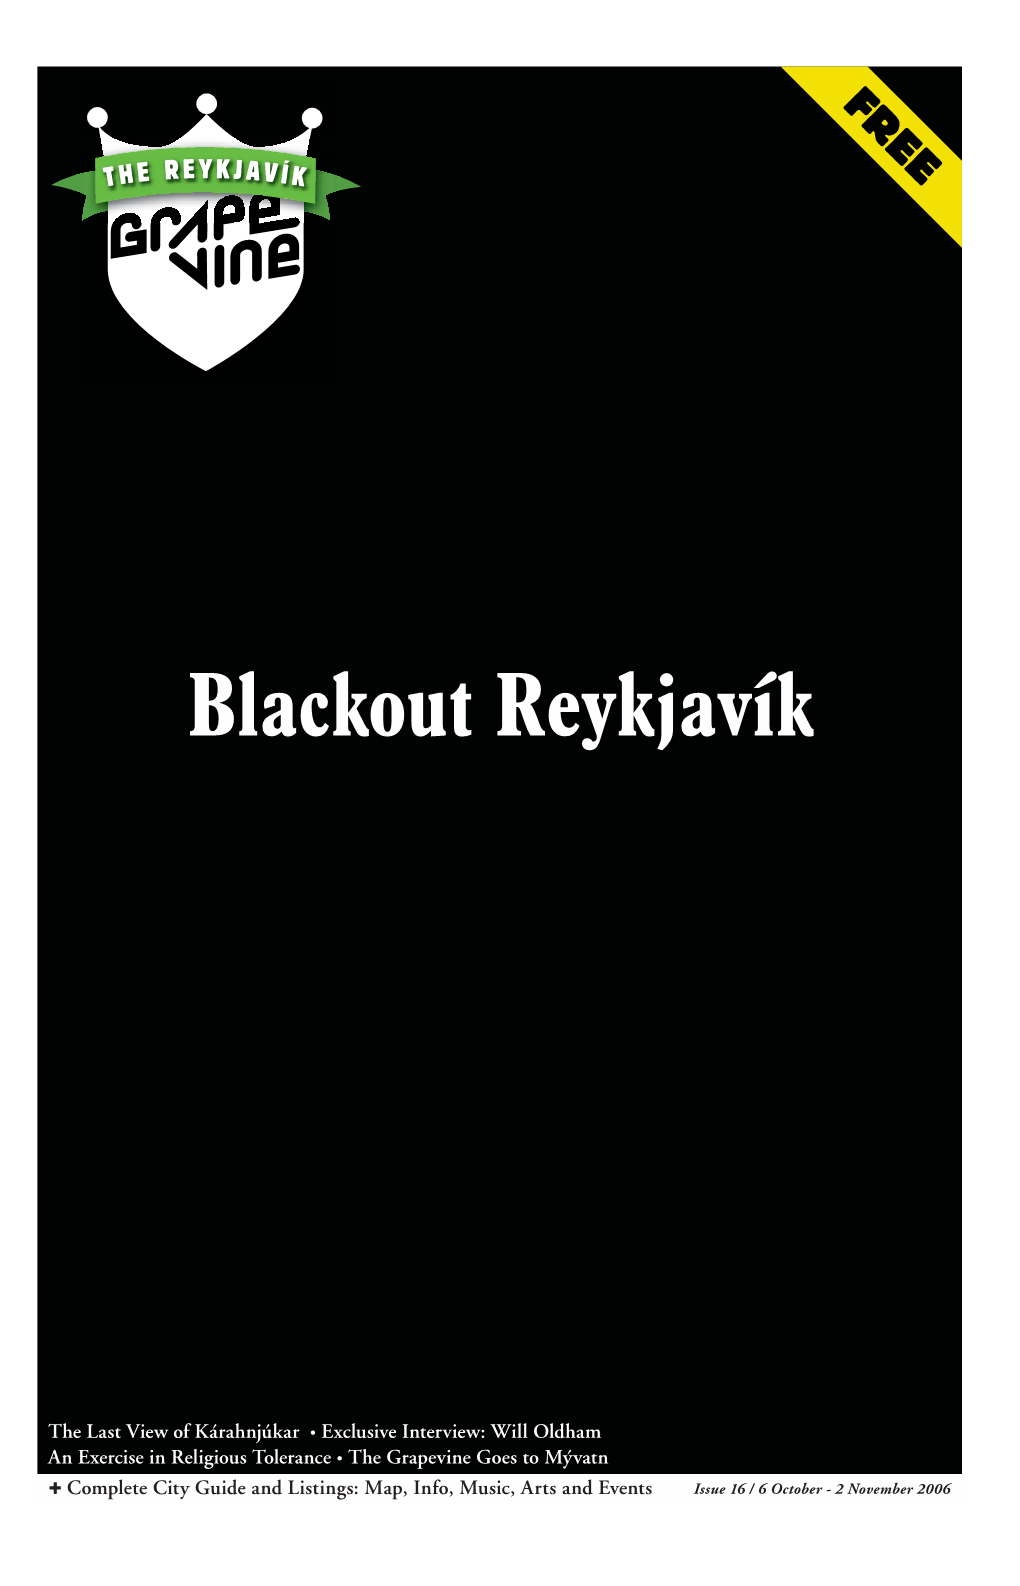 Blackout Reykjavík